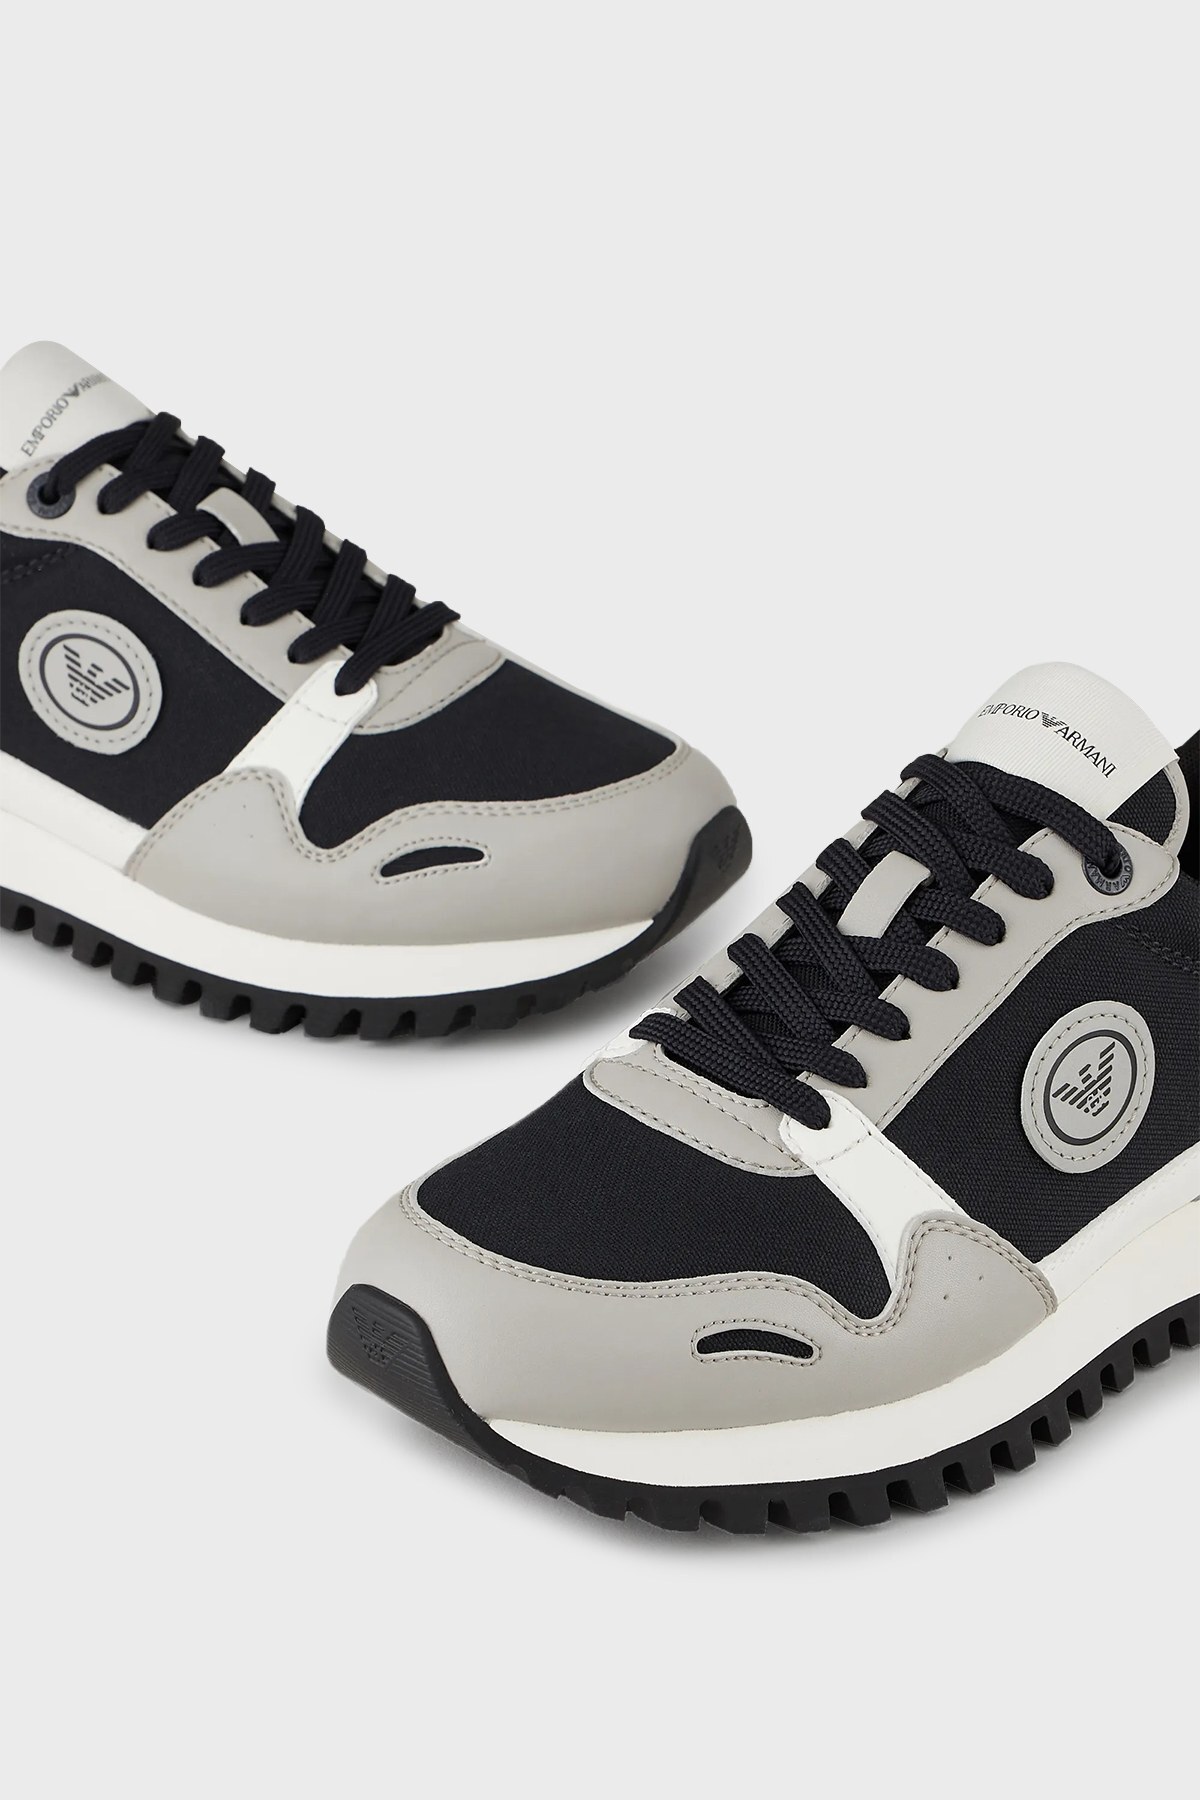 Emporio Armani Logolu Bağcıklı Sneaker Erkek Ayakkabı S X4X536 XM999 Q471 LACİVERT-GRİ